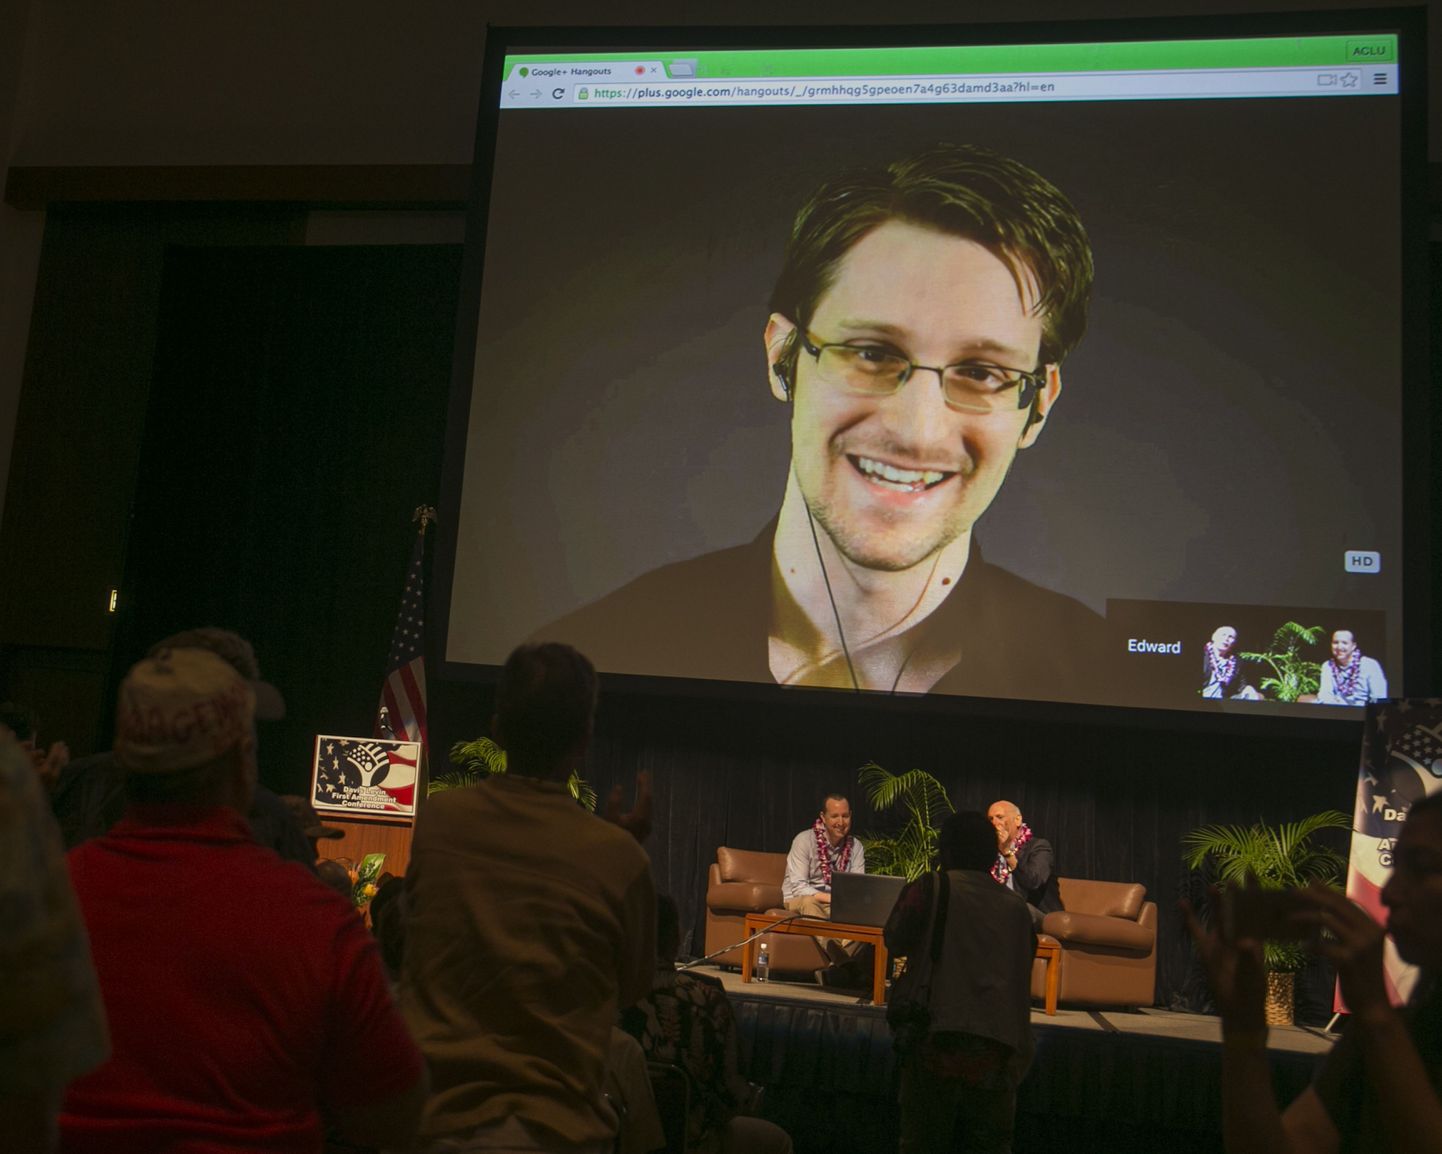 Moskvas viibiv Edward Snowden (ekraanil) veebruaris toimunud videosilla ajal.